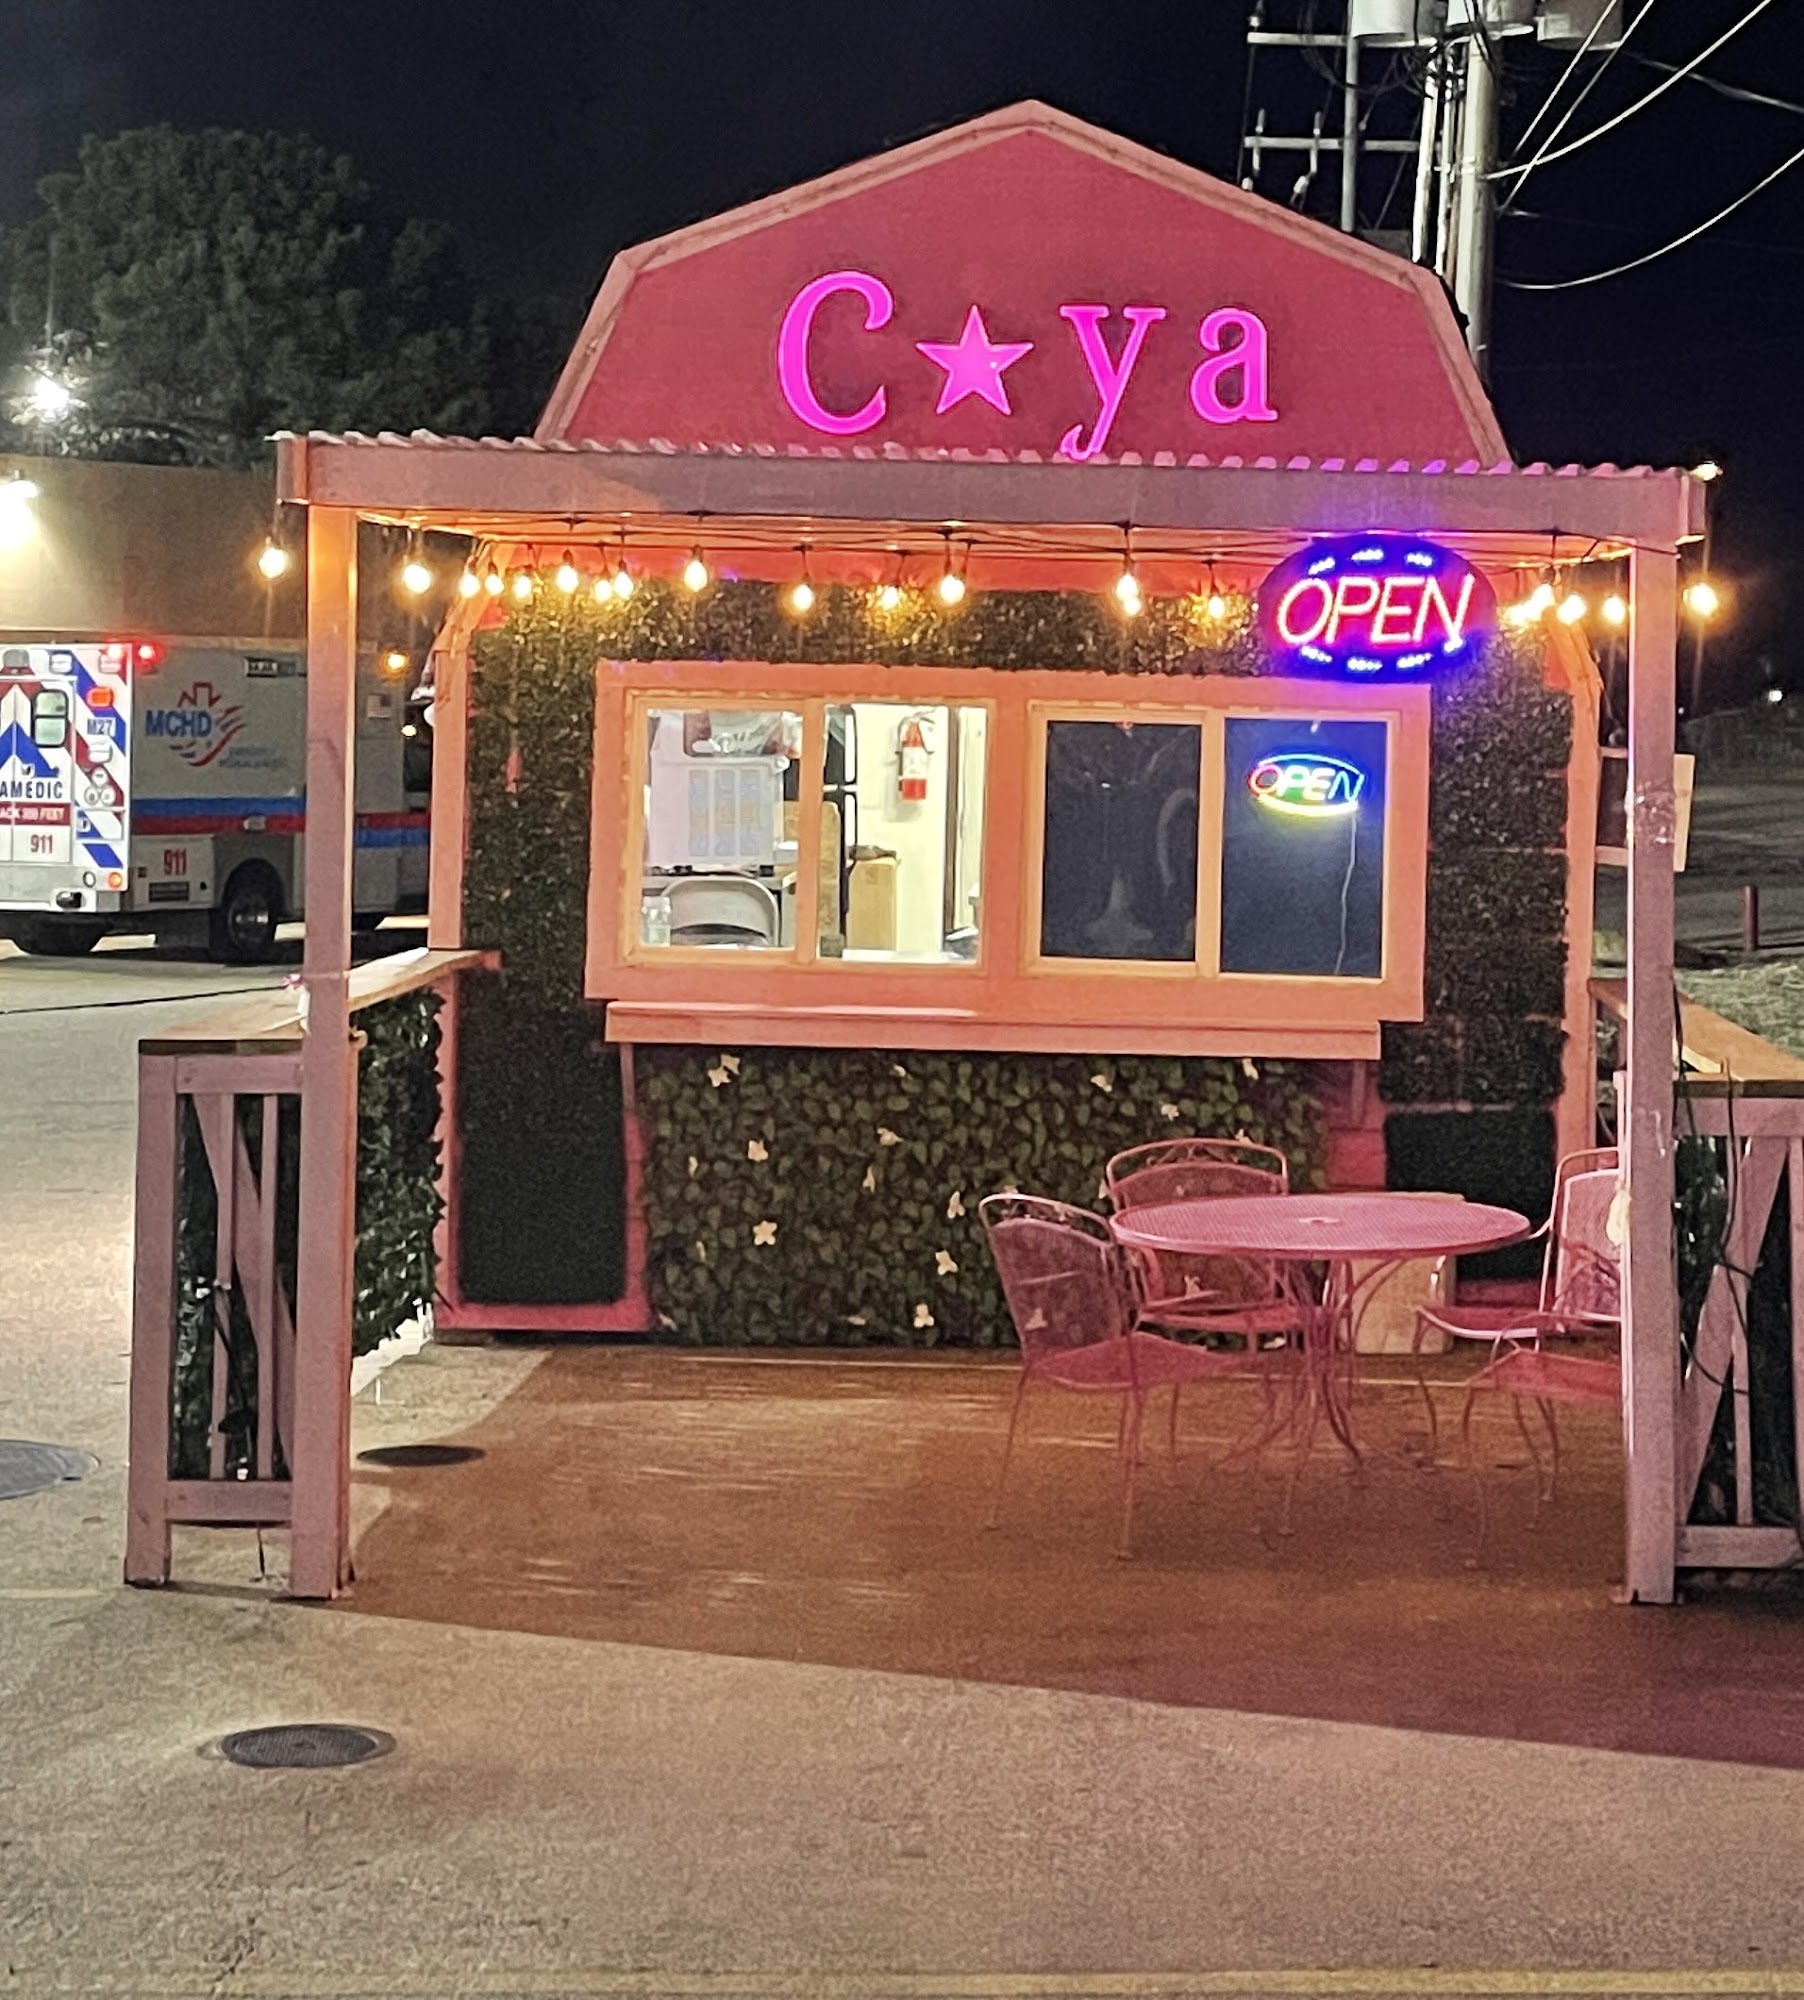 CAYA's Cafe